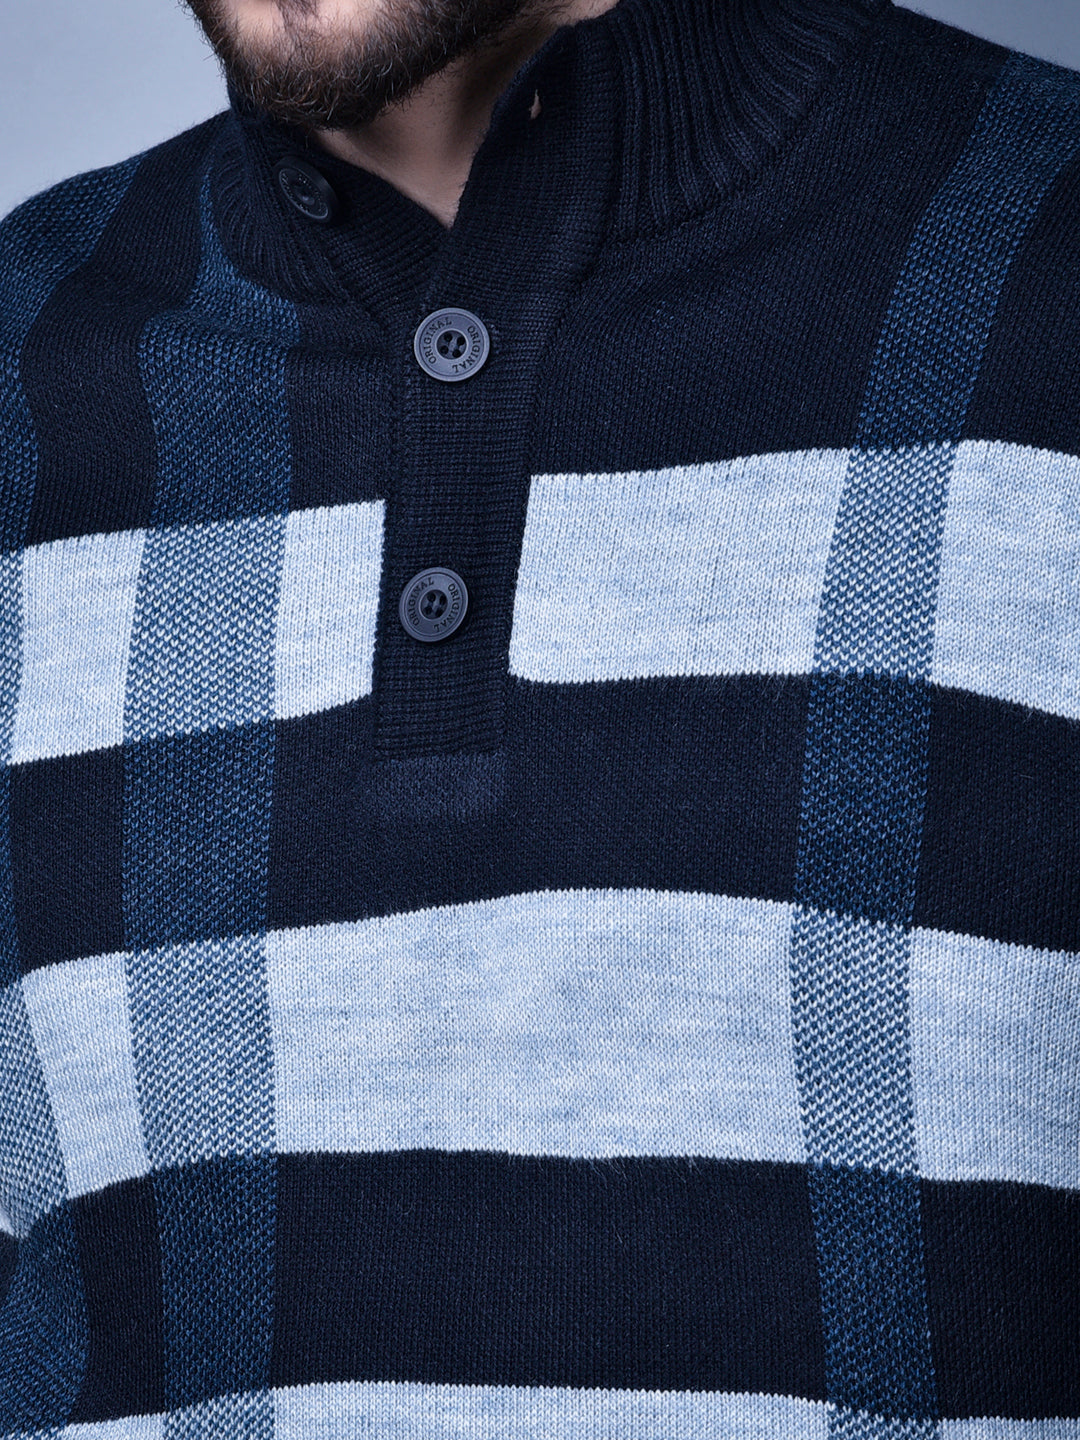 Cobb Navy Blue Striped Round Neck Sweater